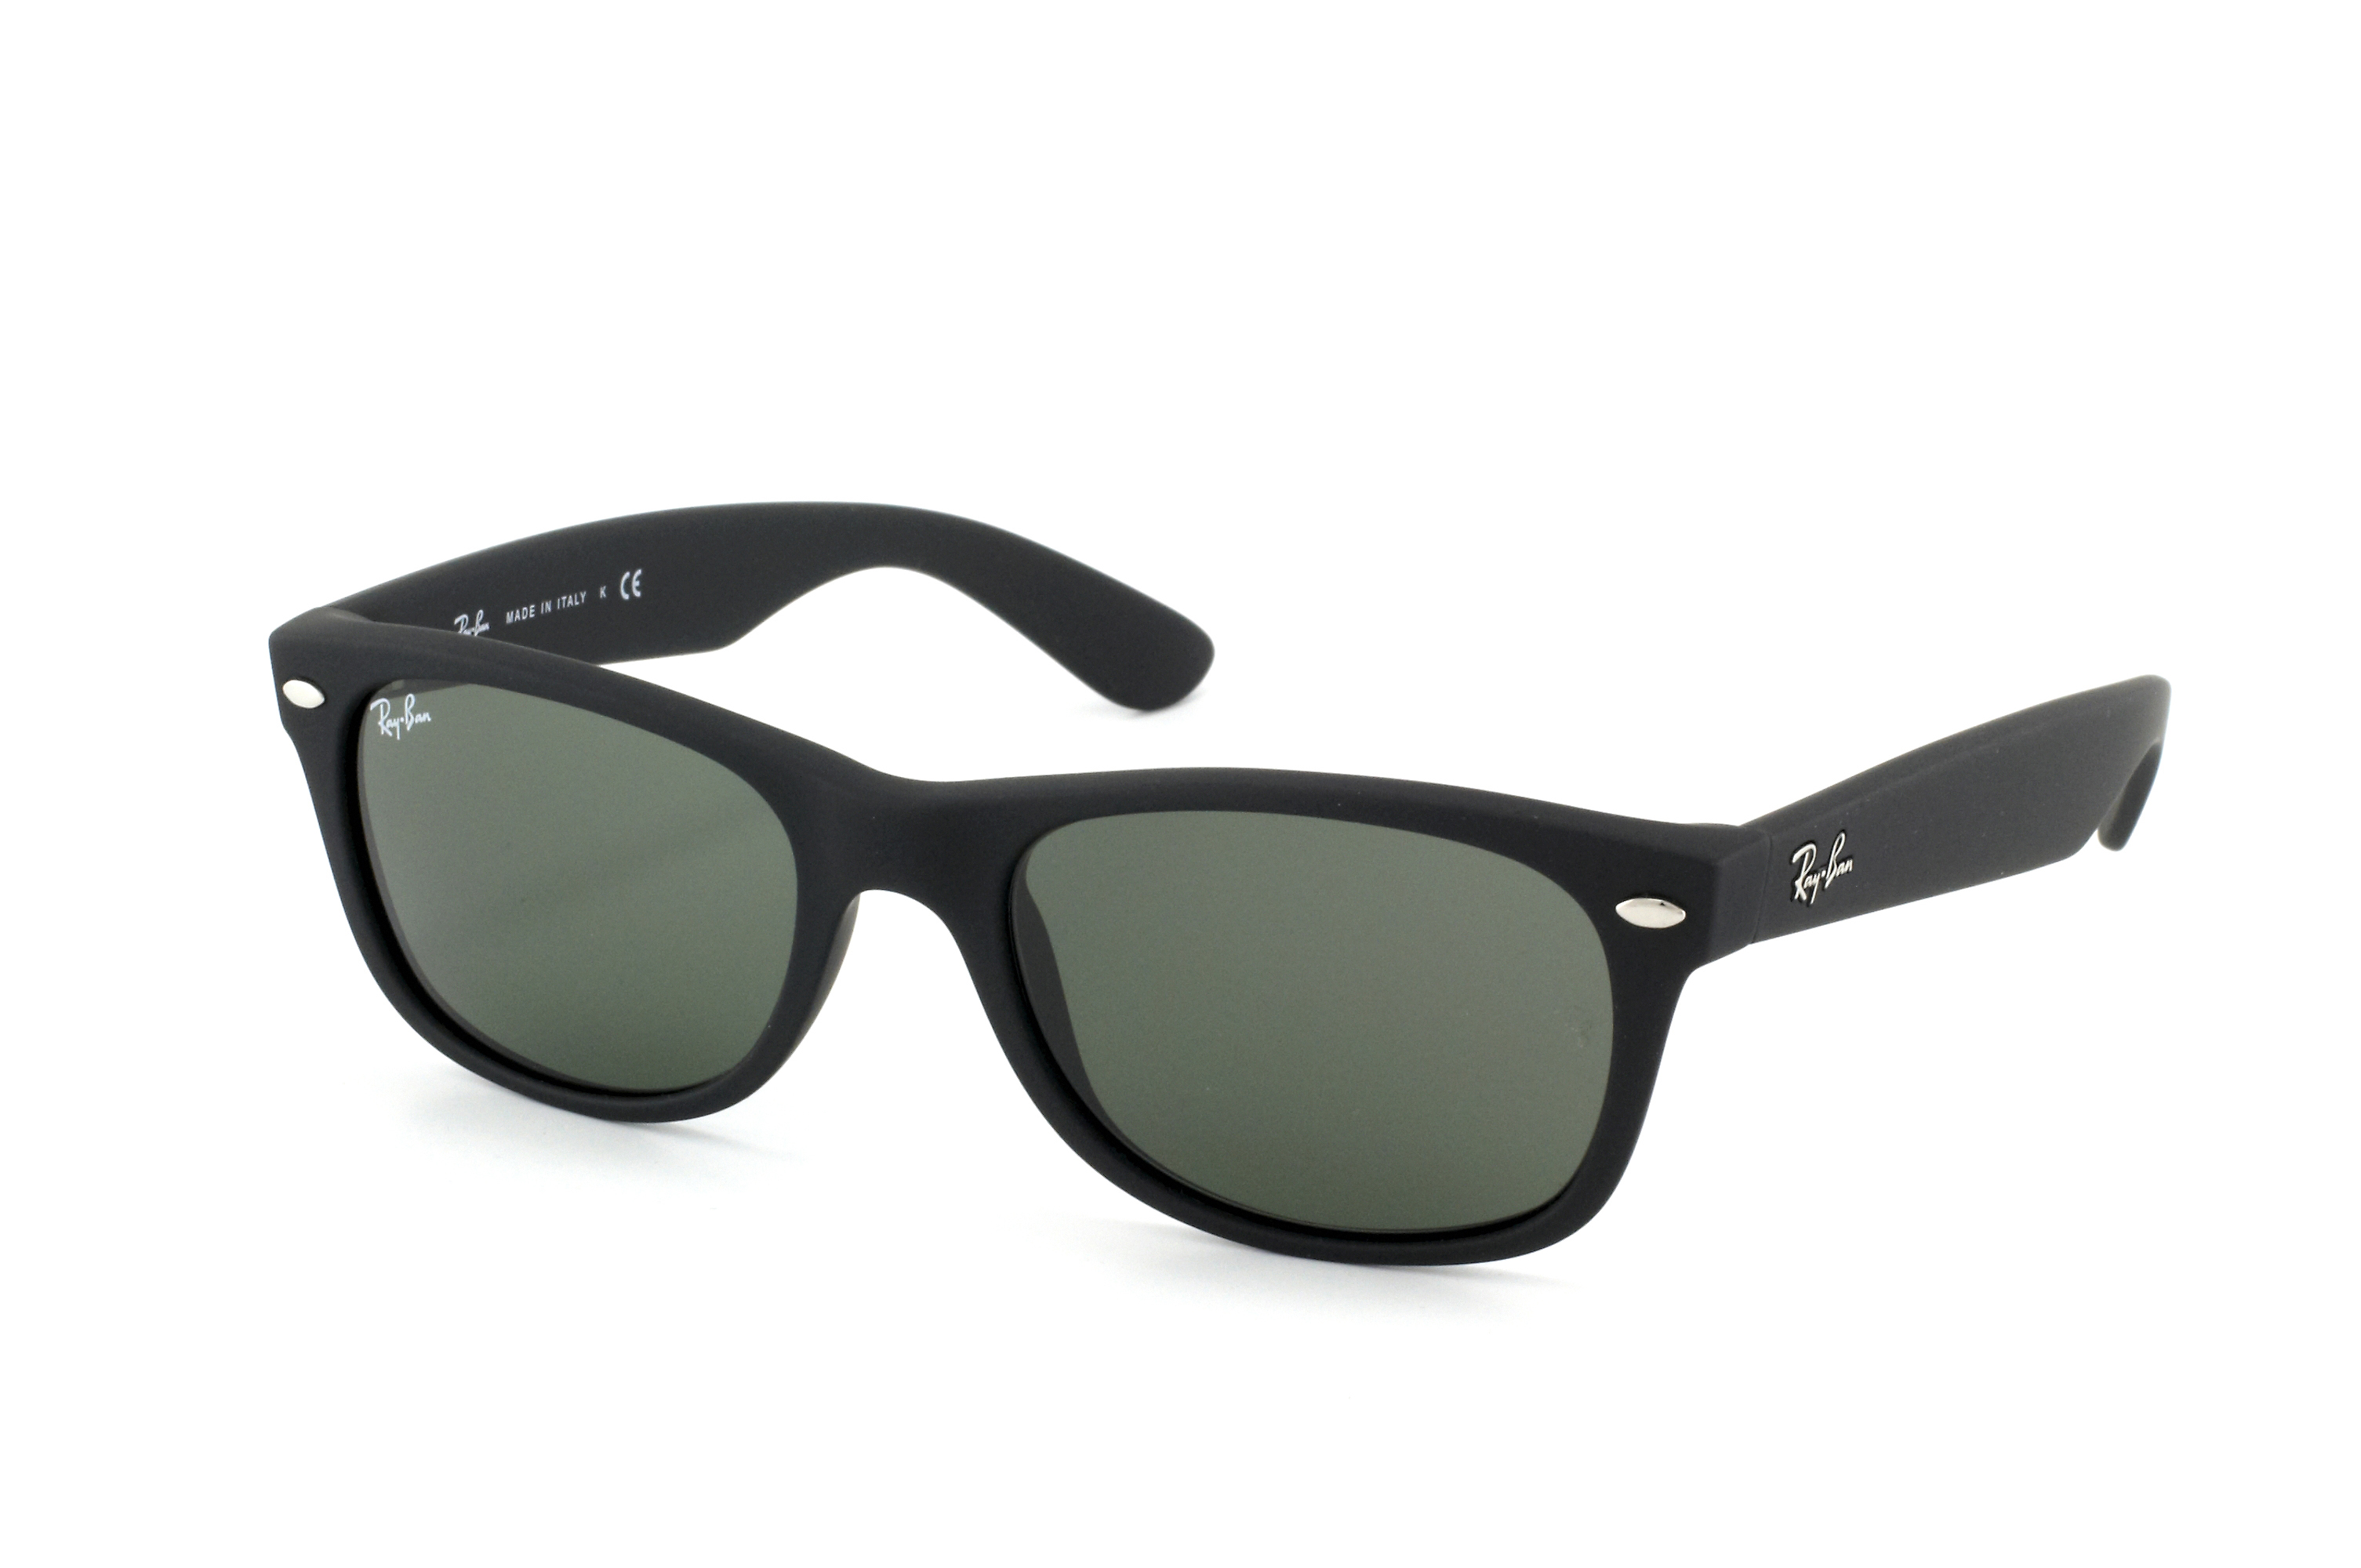 Buy Ray-Ban New Wayfarer RB 2132 622 Sunglasses